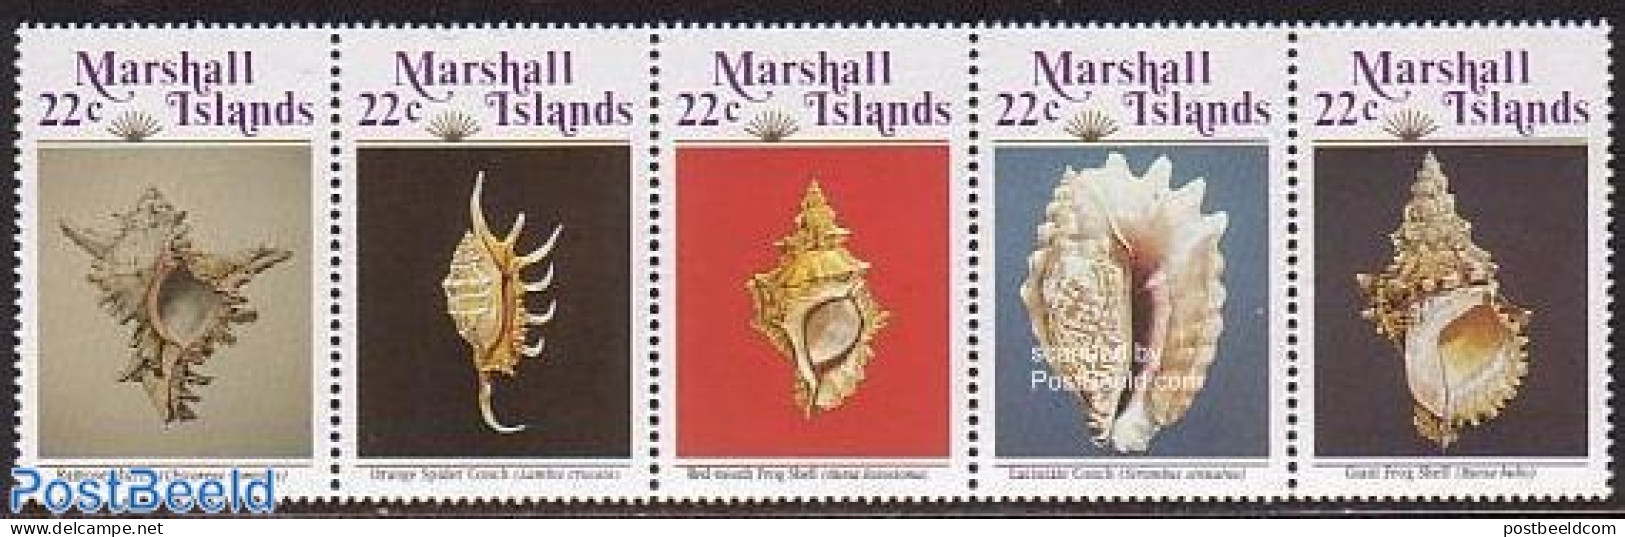 Marshall Islands 1986 Shells 5v [::::], Mint NH, Nature - Shells & Crustaceans - Vita Acquatica